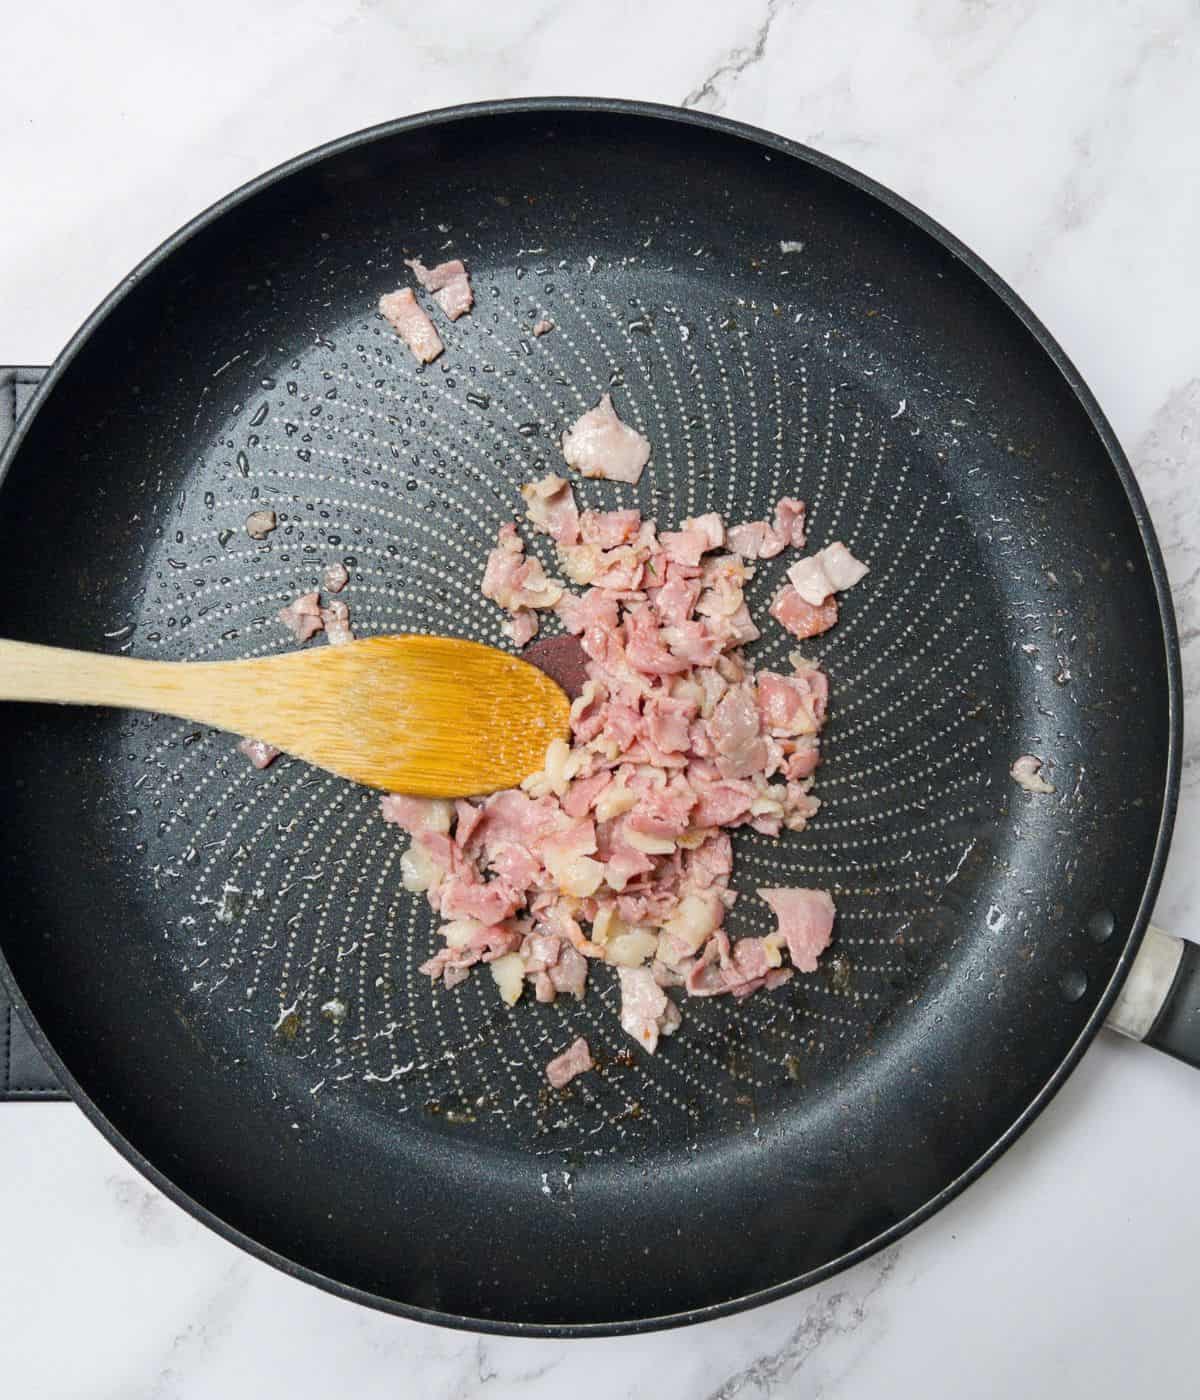 Bacon frying in a frying pan.